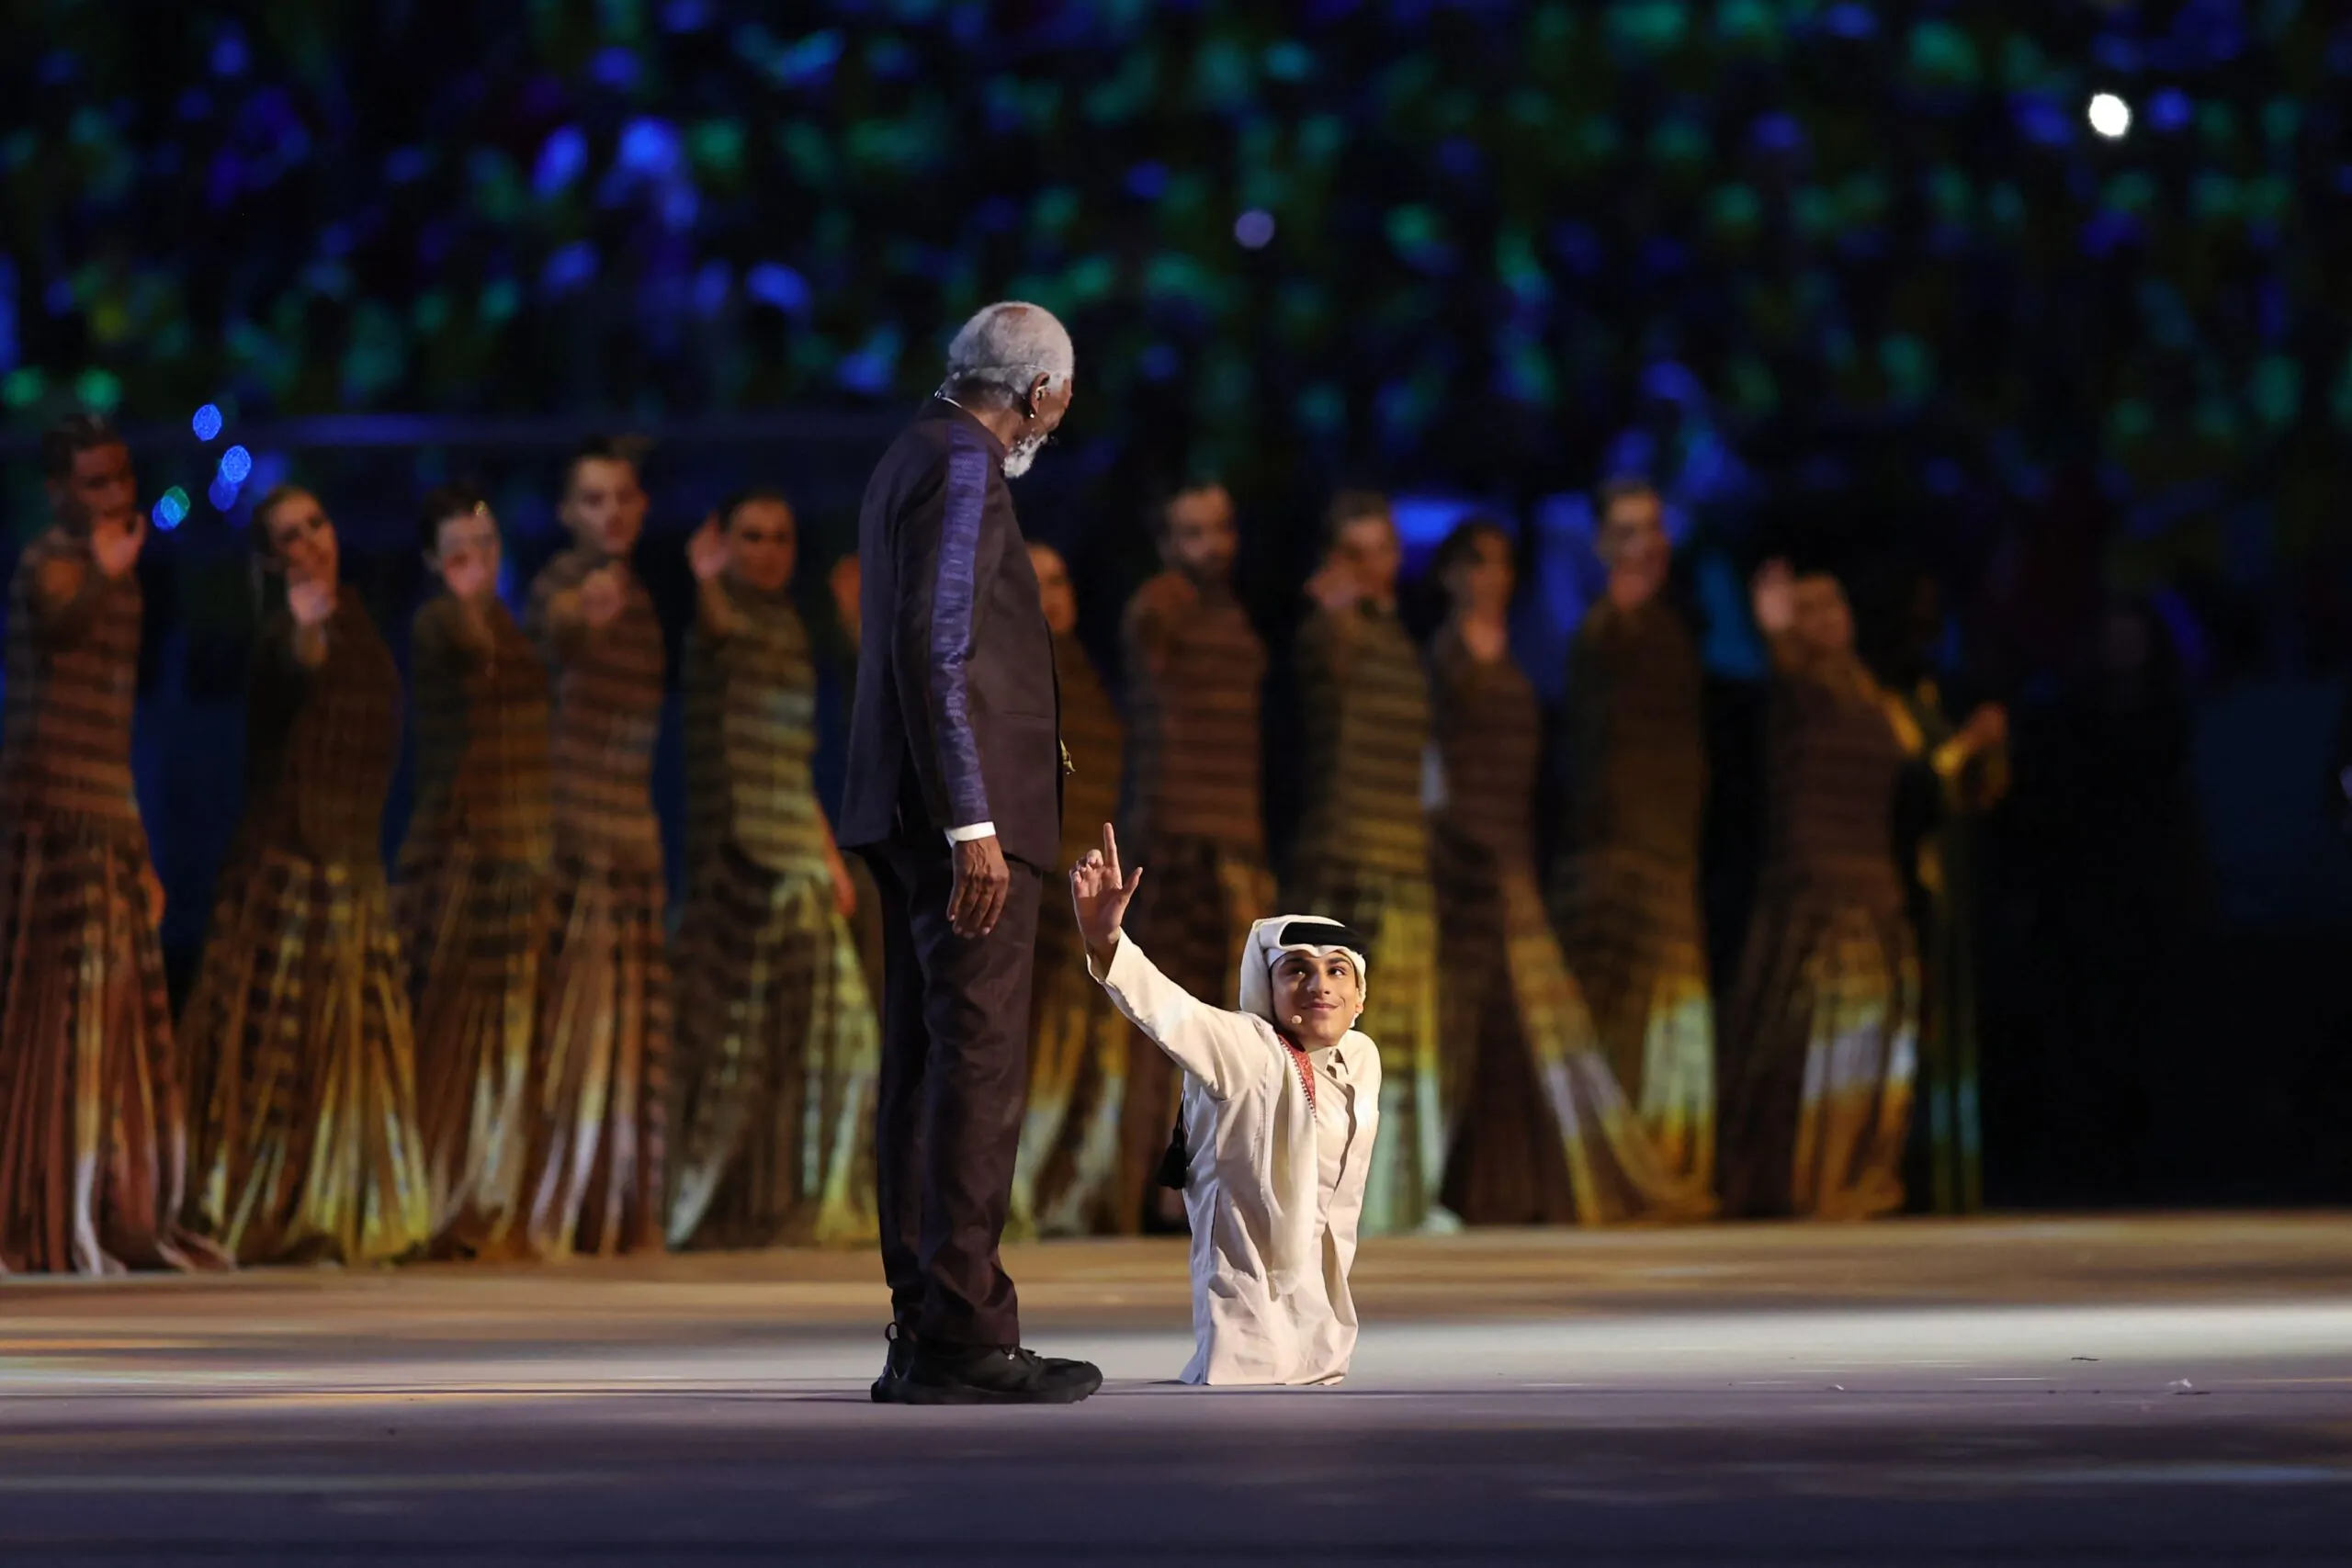 Mondiale in Qatar, Morgan Freeman sbalordisce il pubblico durante la cerimonia d’apertura